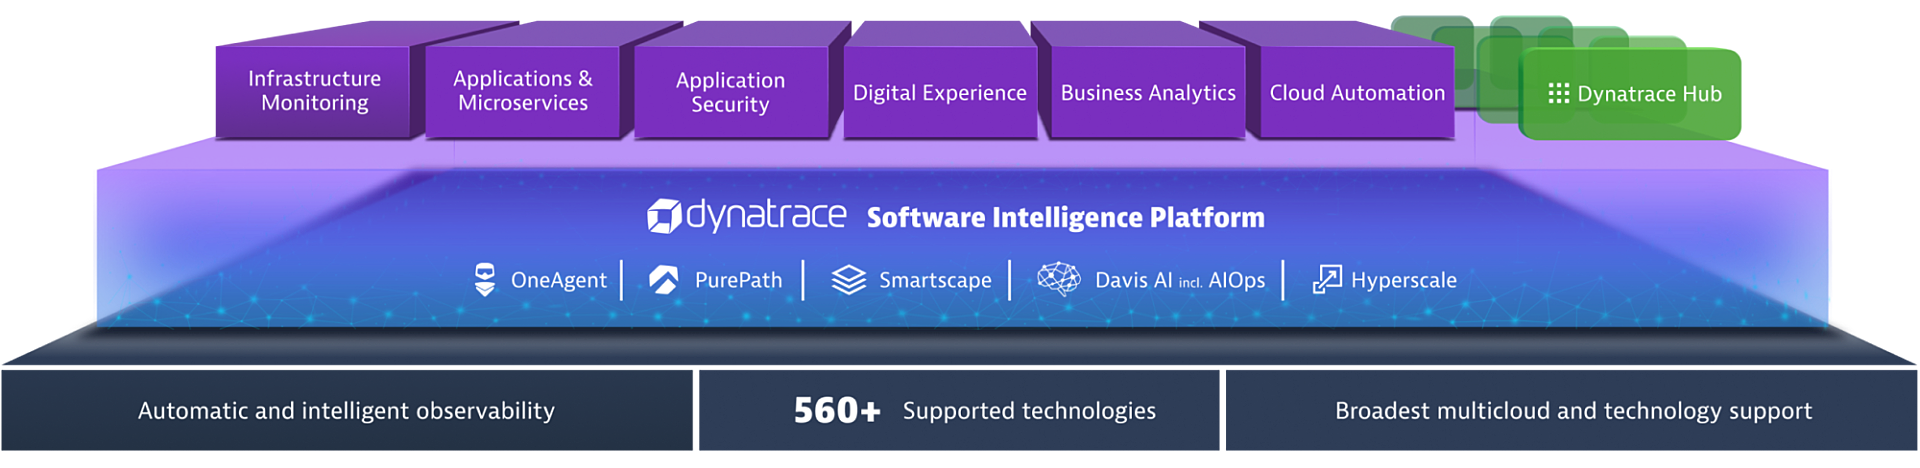 Dynatrace software intelligence platform